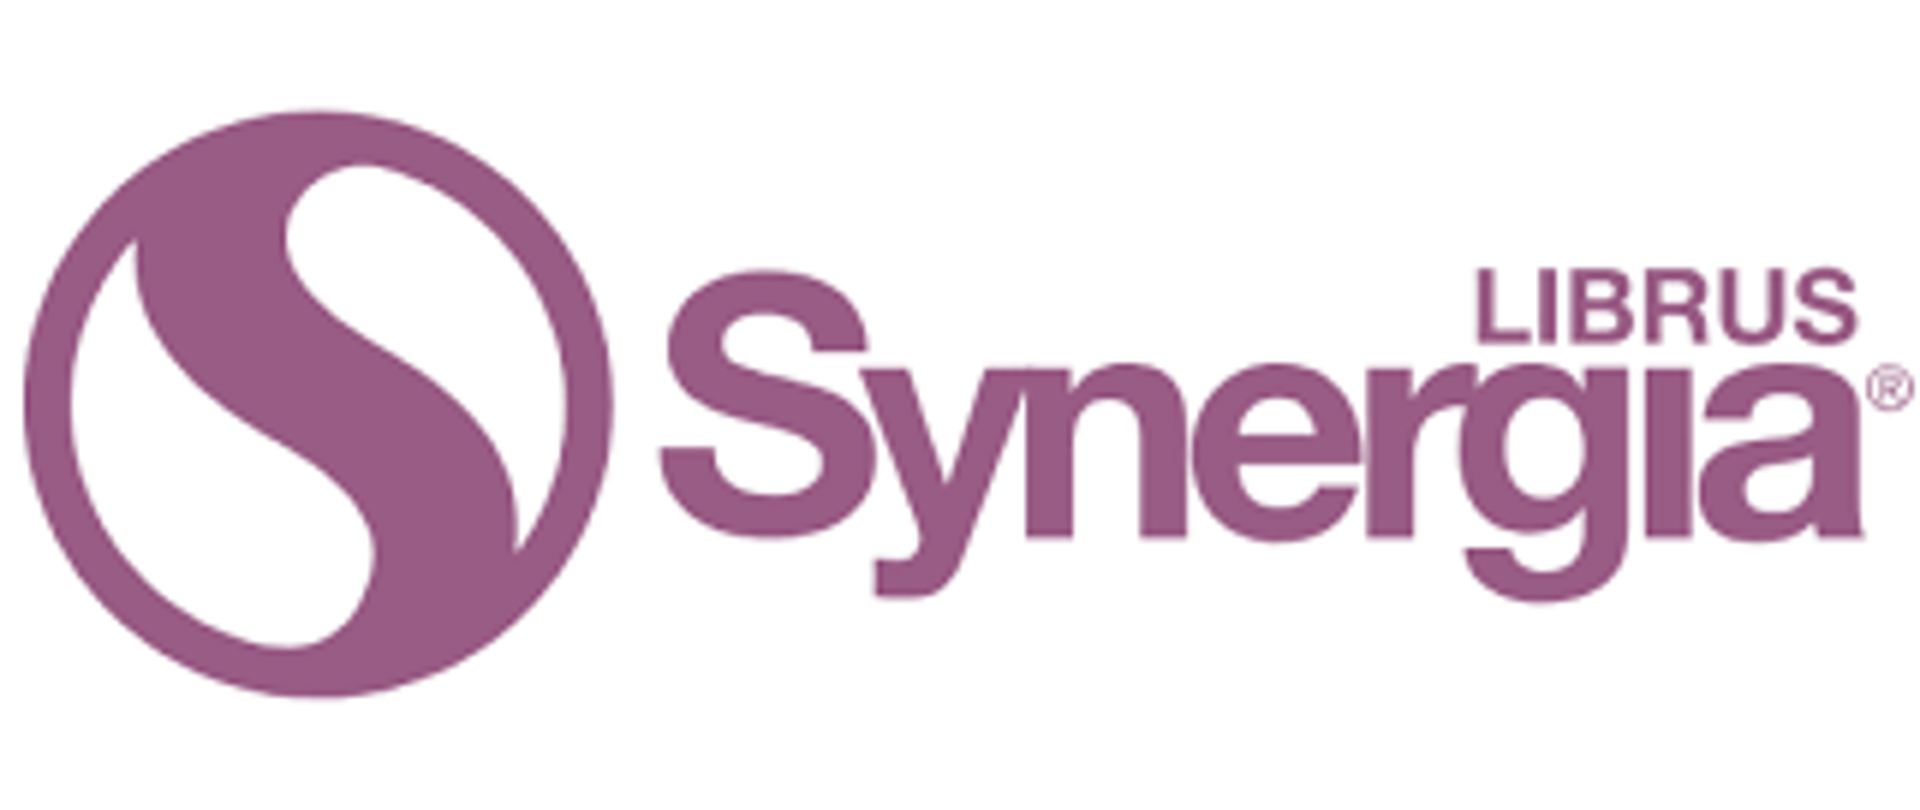 Logo librus synergia